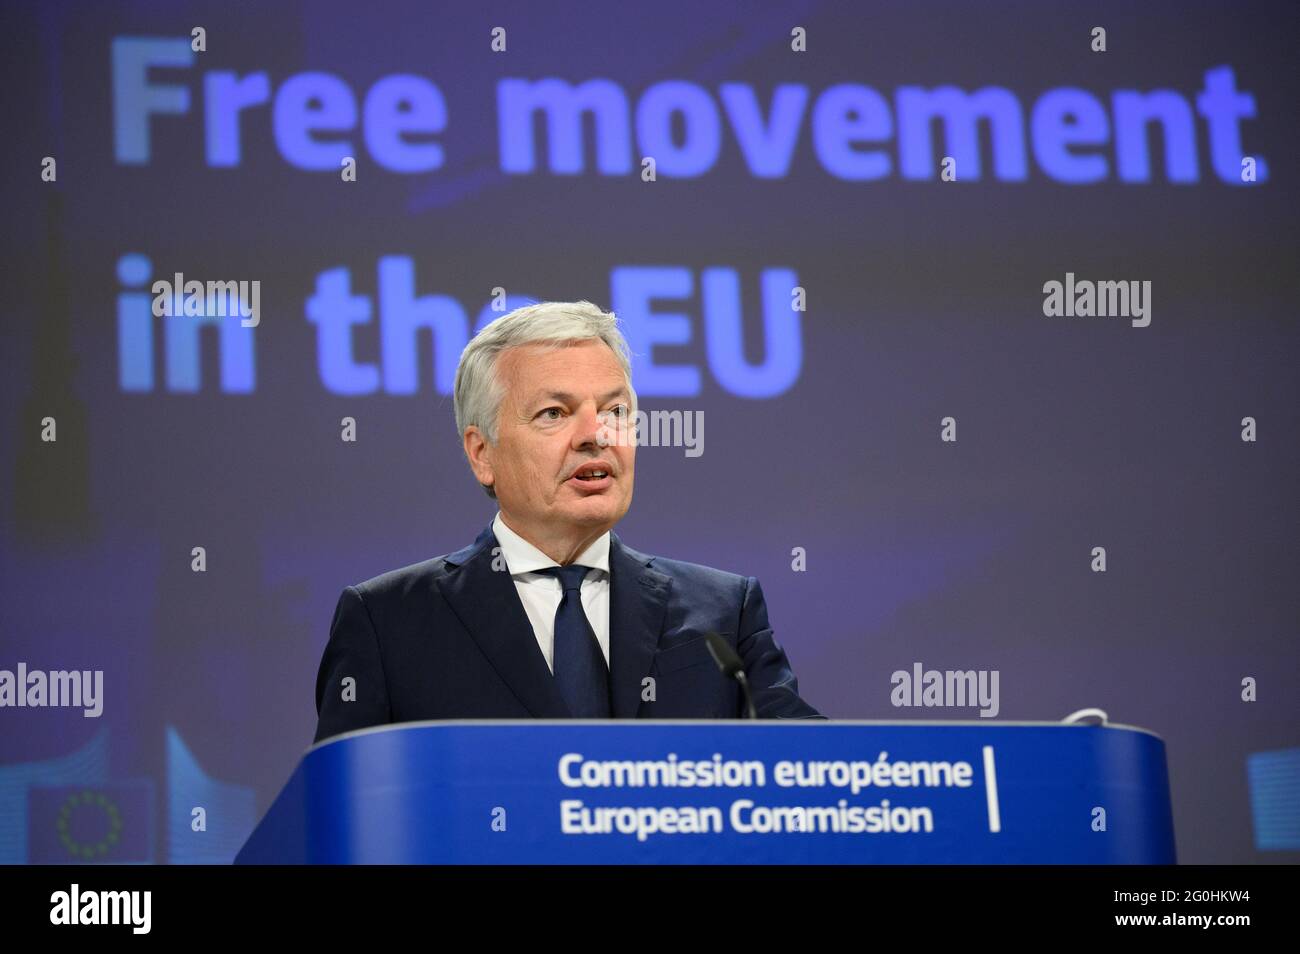 (210602) -- BRUSELAS, 2 de junio de 2021 (Xinhua) -- Didier Reynders, Comisario Europeo de Justicia, celebra una conferencia de prensa sobre la actualización de la recomendación para medidas de libre circulación, en Bruselas, Bélgica, 31 de mayo de 2021. (Unión Europea/Folleto a través de Xinhua) Foto de stock